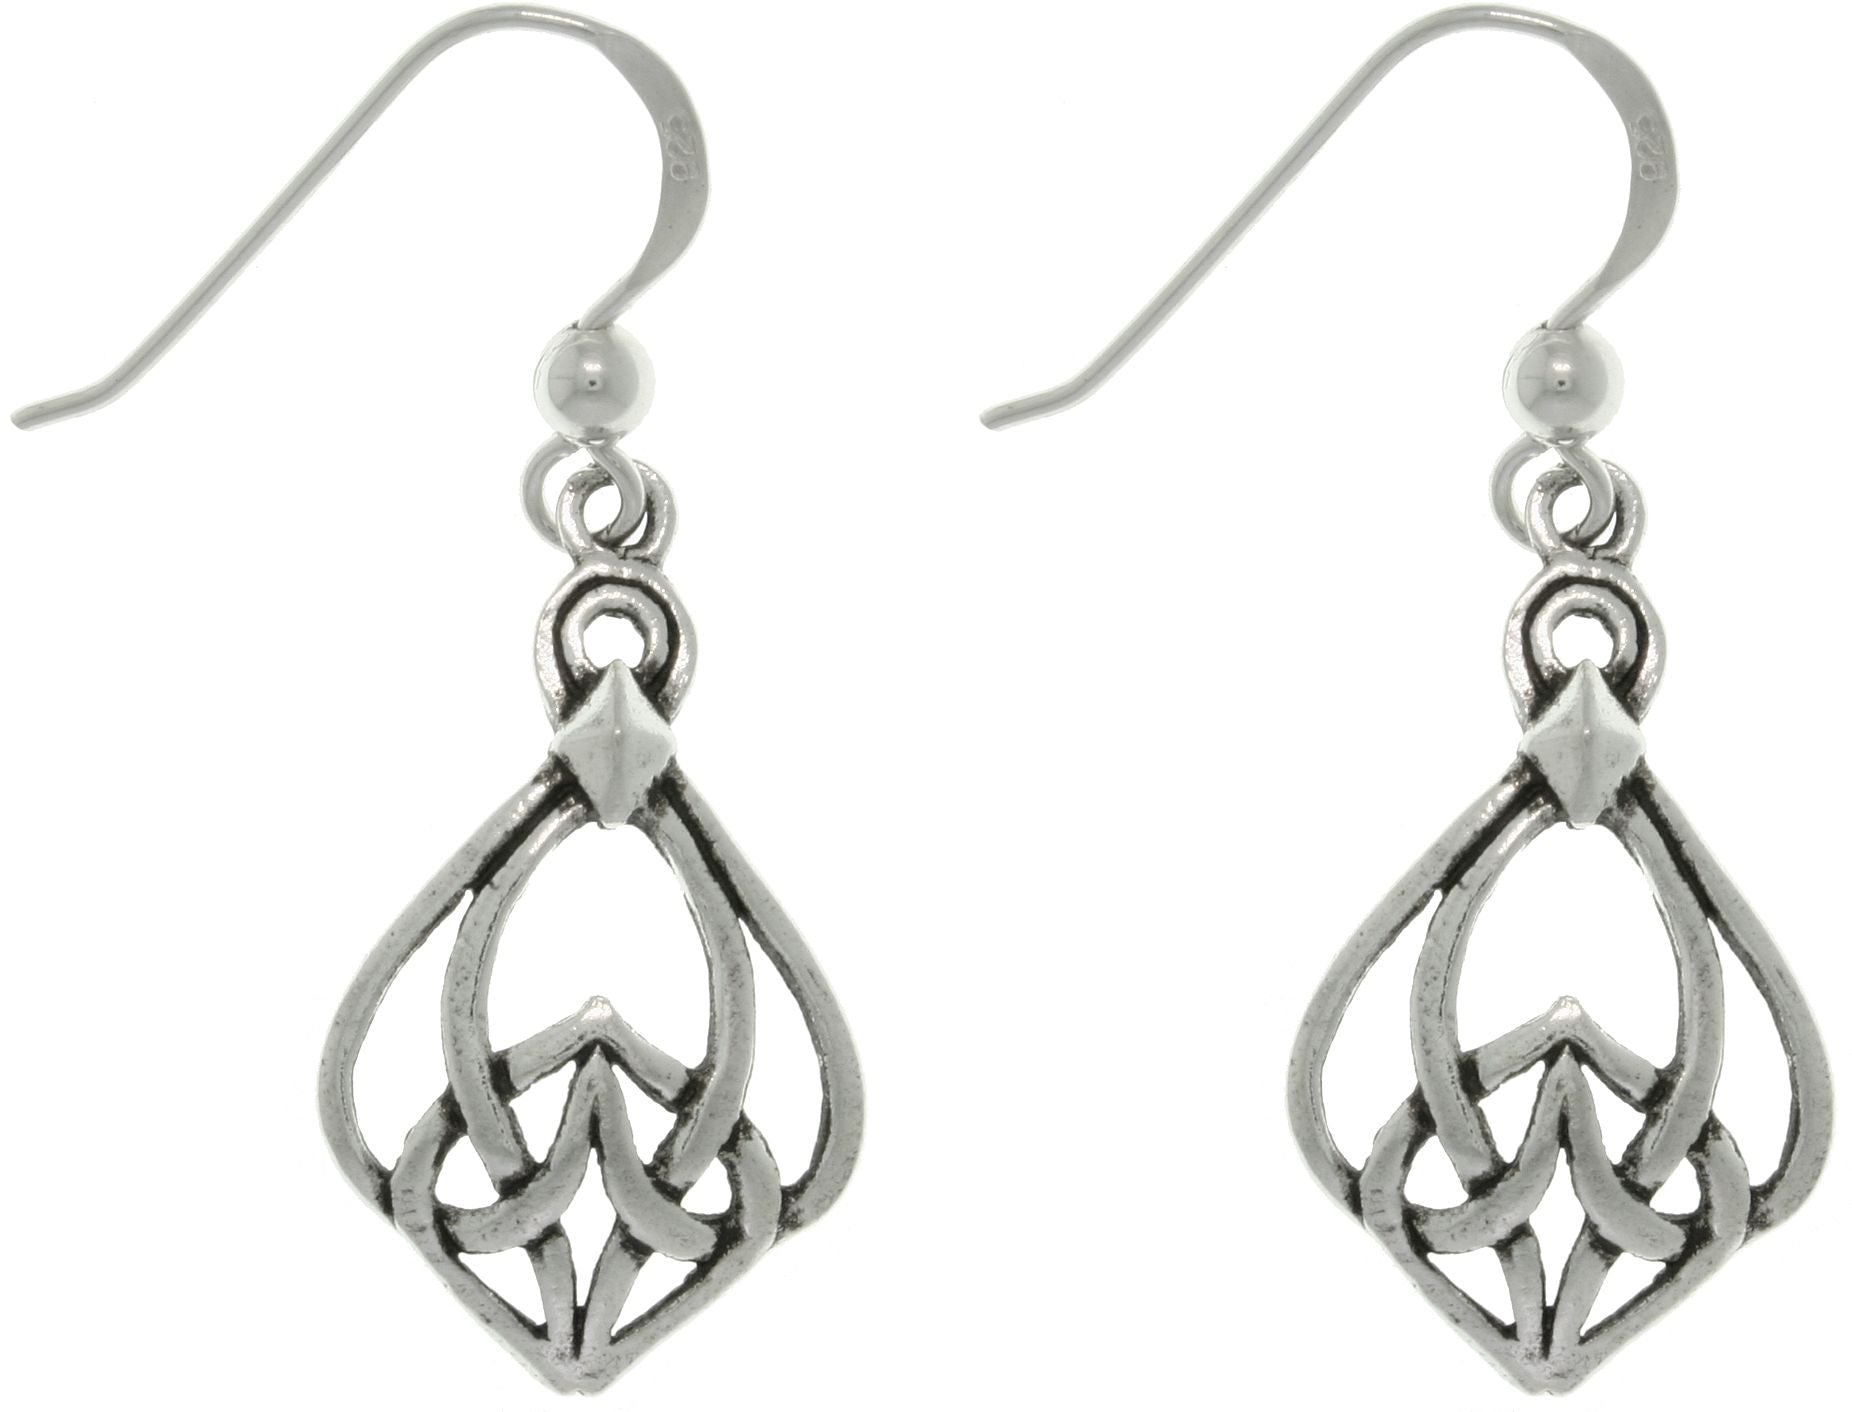 Jewelry Trends Sterling Silver Celtic Knot Weave Dangle Earrings